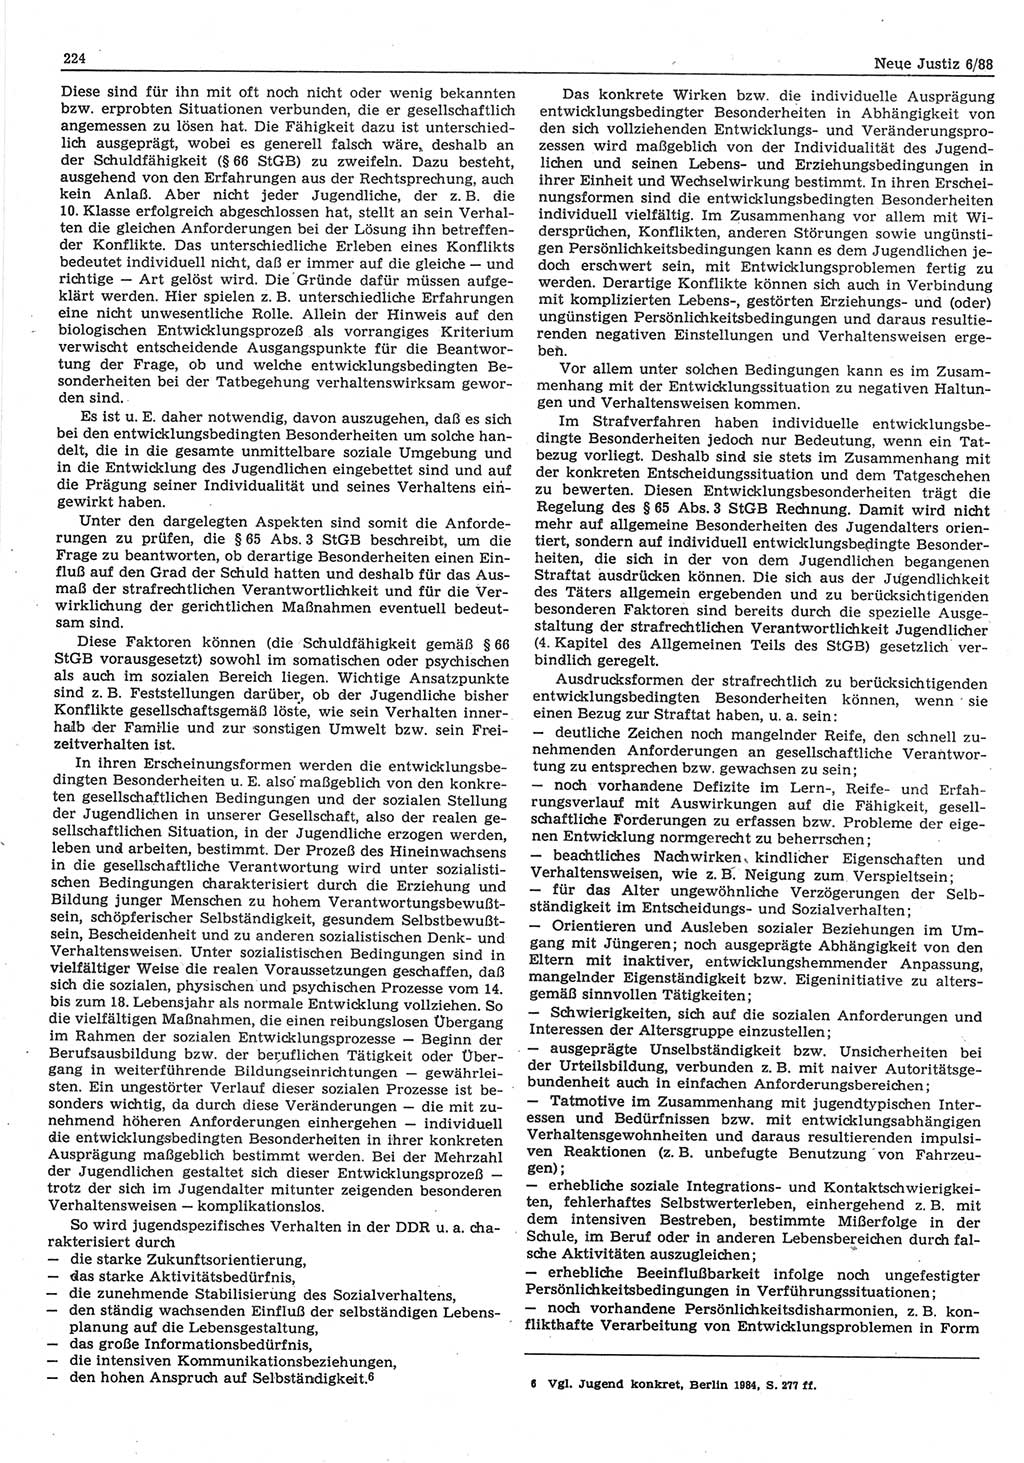 Neue Justiz (NJ), Zeitschrift für sozialistisches Recht und Gesetzlichkeit [Deutsche Demokratische Republik (DDR)], 42. Jahrgang 1988, Seite 224 (NJ DDR 1988, S. 224)